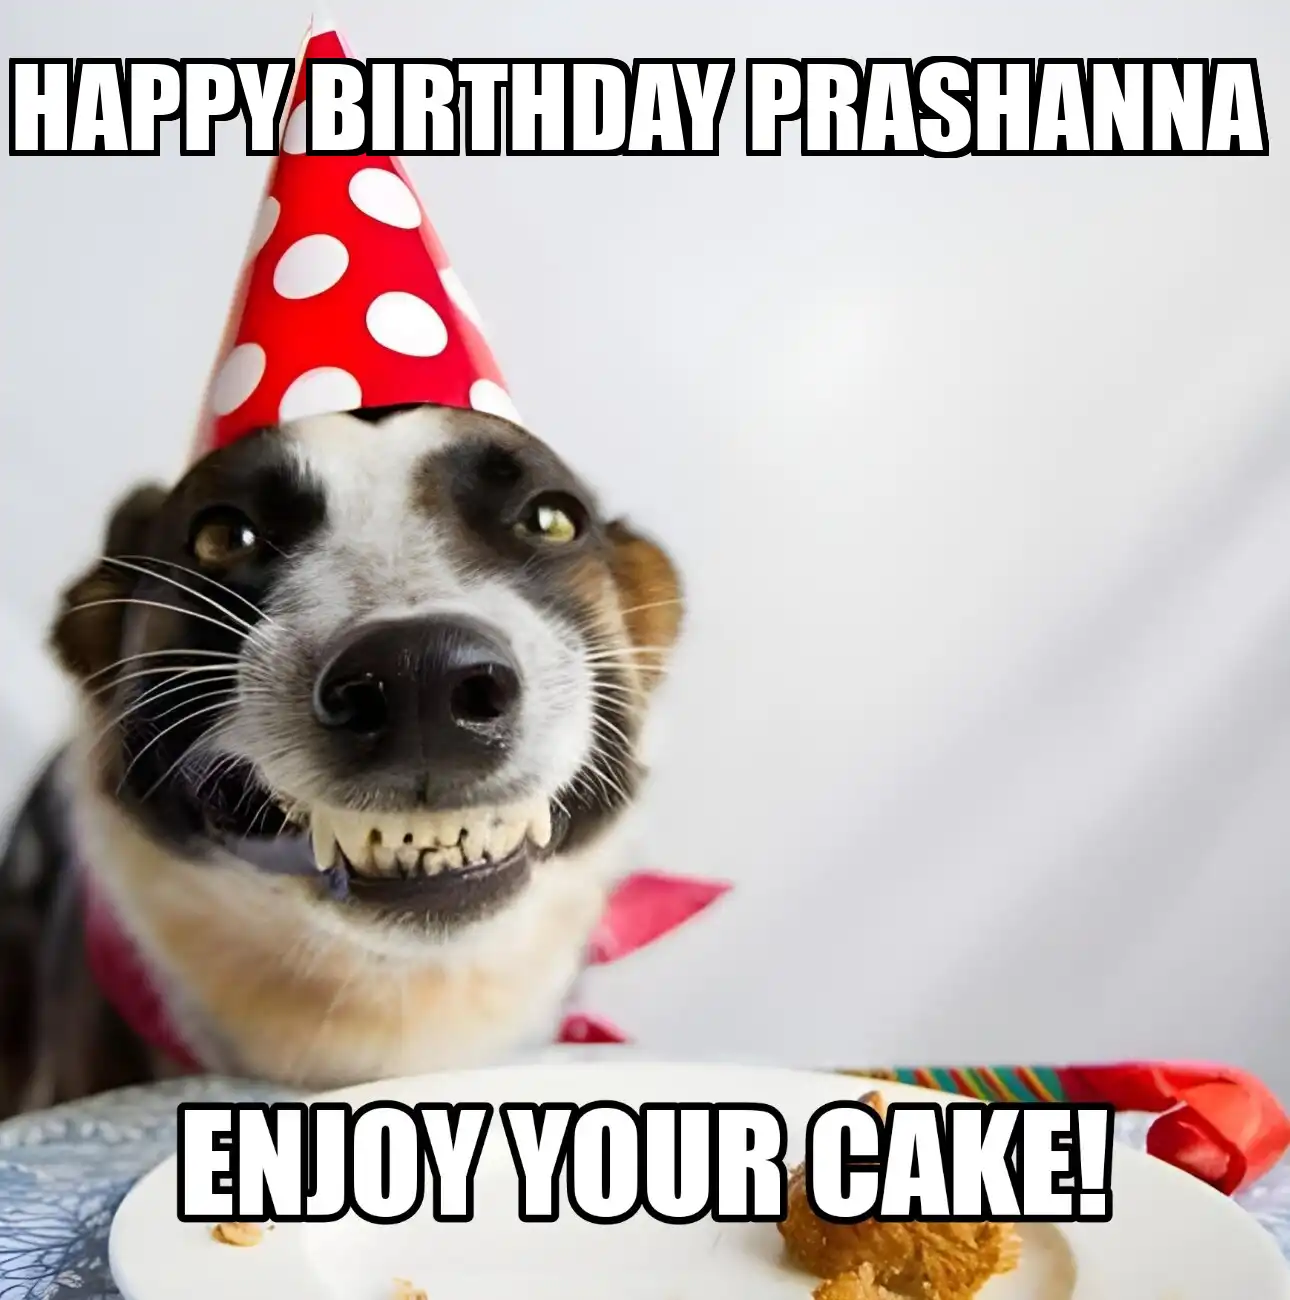 Happy Birthday Prashanna Enjoy Your Cake Dog Meme